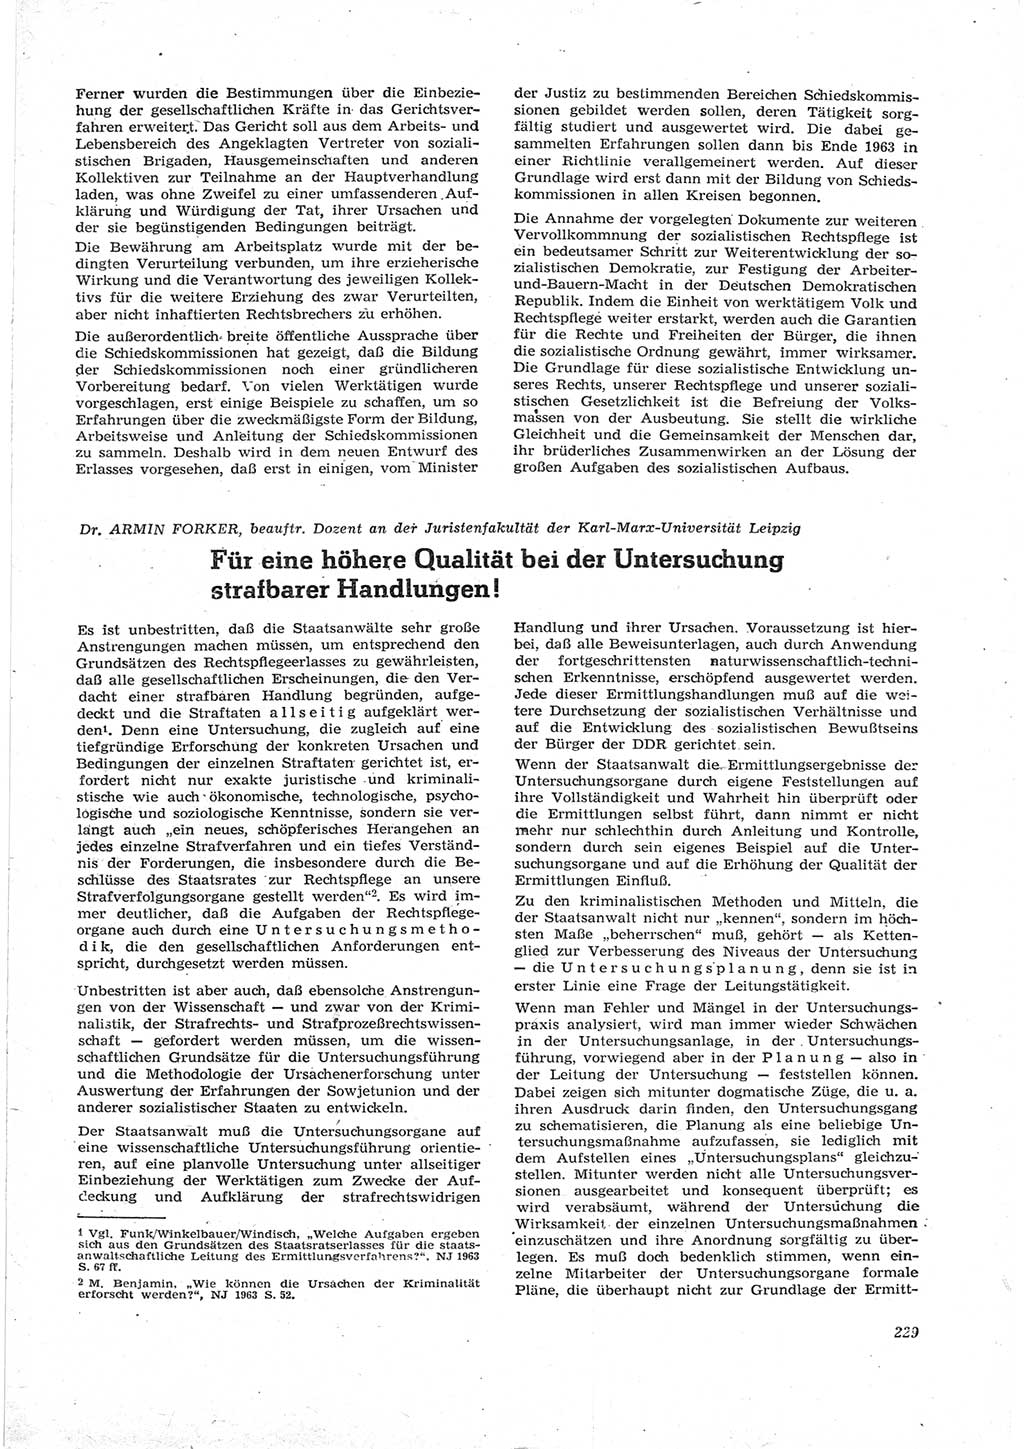 Neue Justiz (NJ), Zeitschrift für Recht und Rechtswissenschaft [Deutsche Demokratische Republik (DDR)], 17. Jahrgang 1963, Seite 229 (NJ DDR 1963, S. 229)